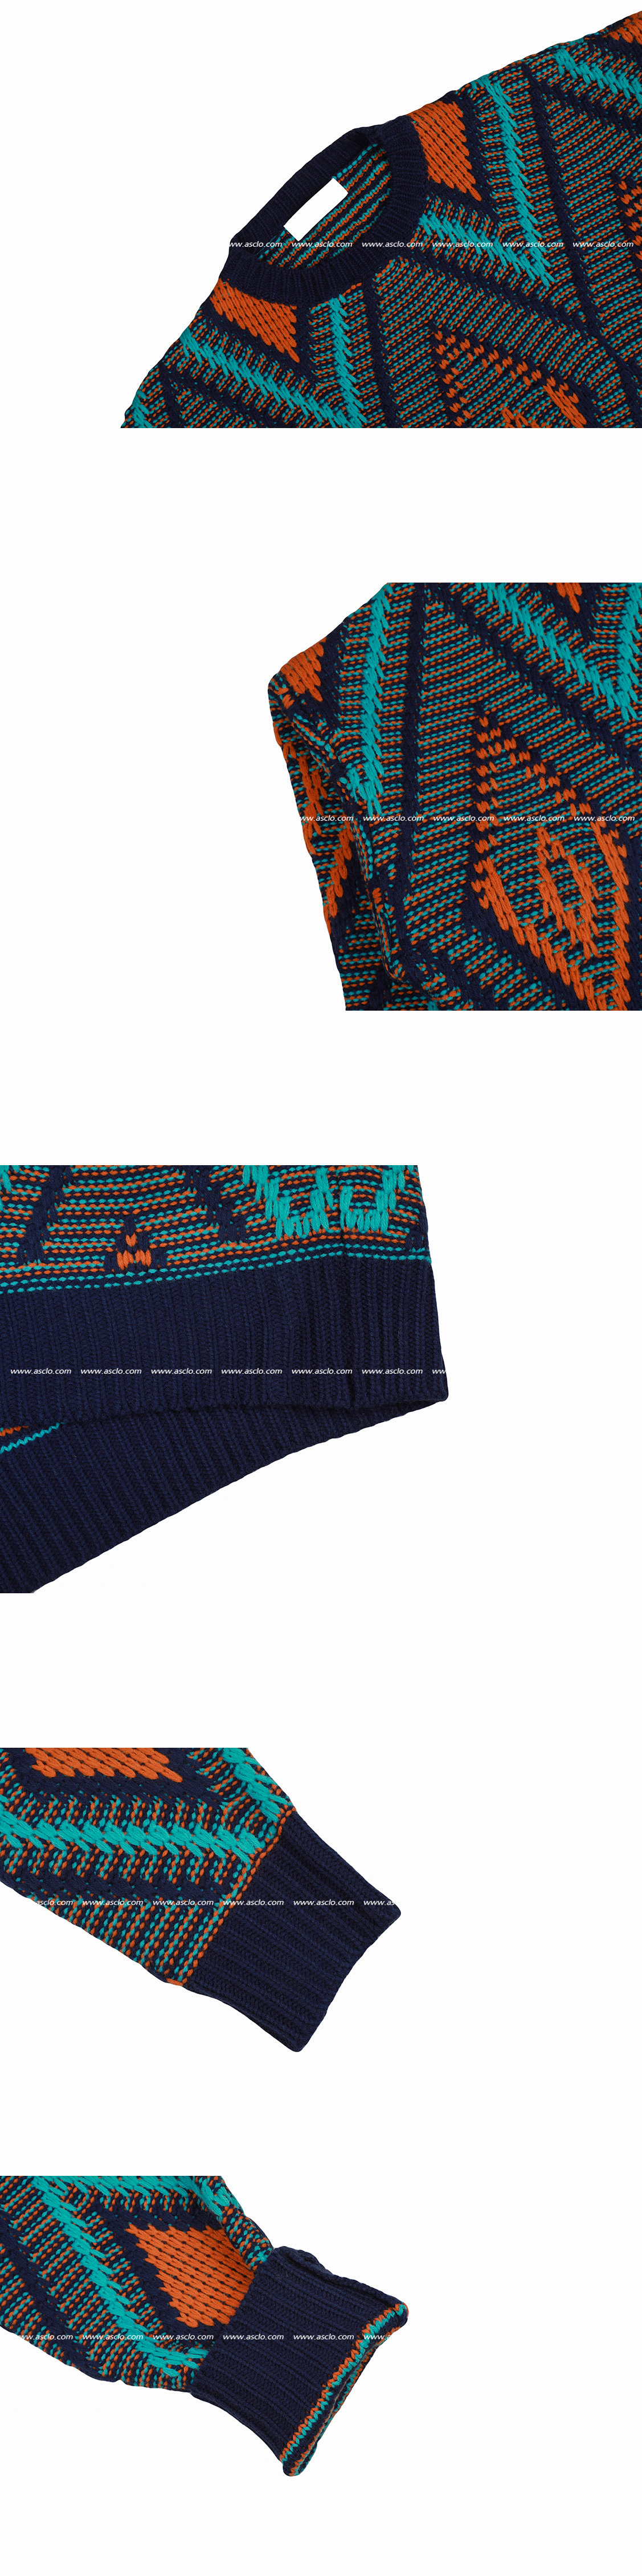 ASCLO Argyle Knit (2color) - ASCLO